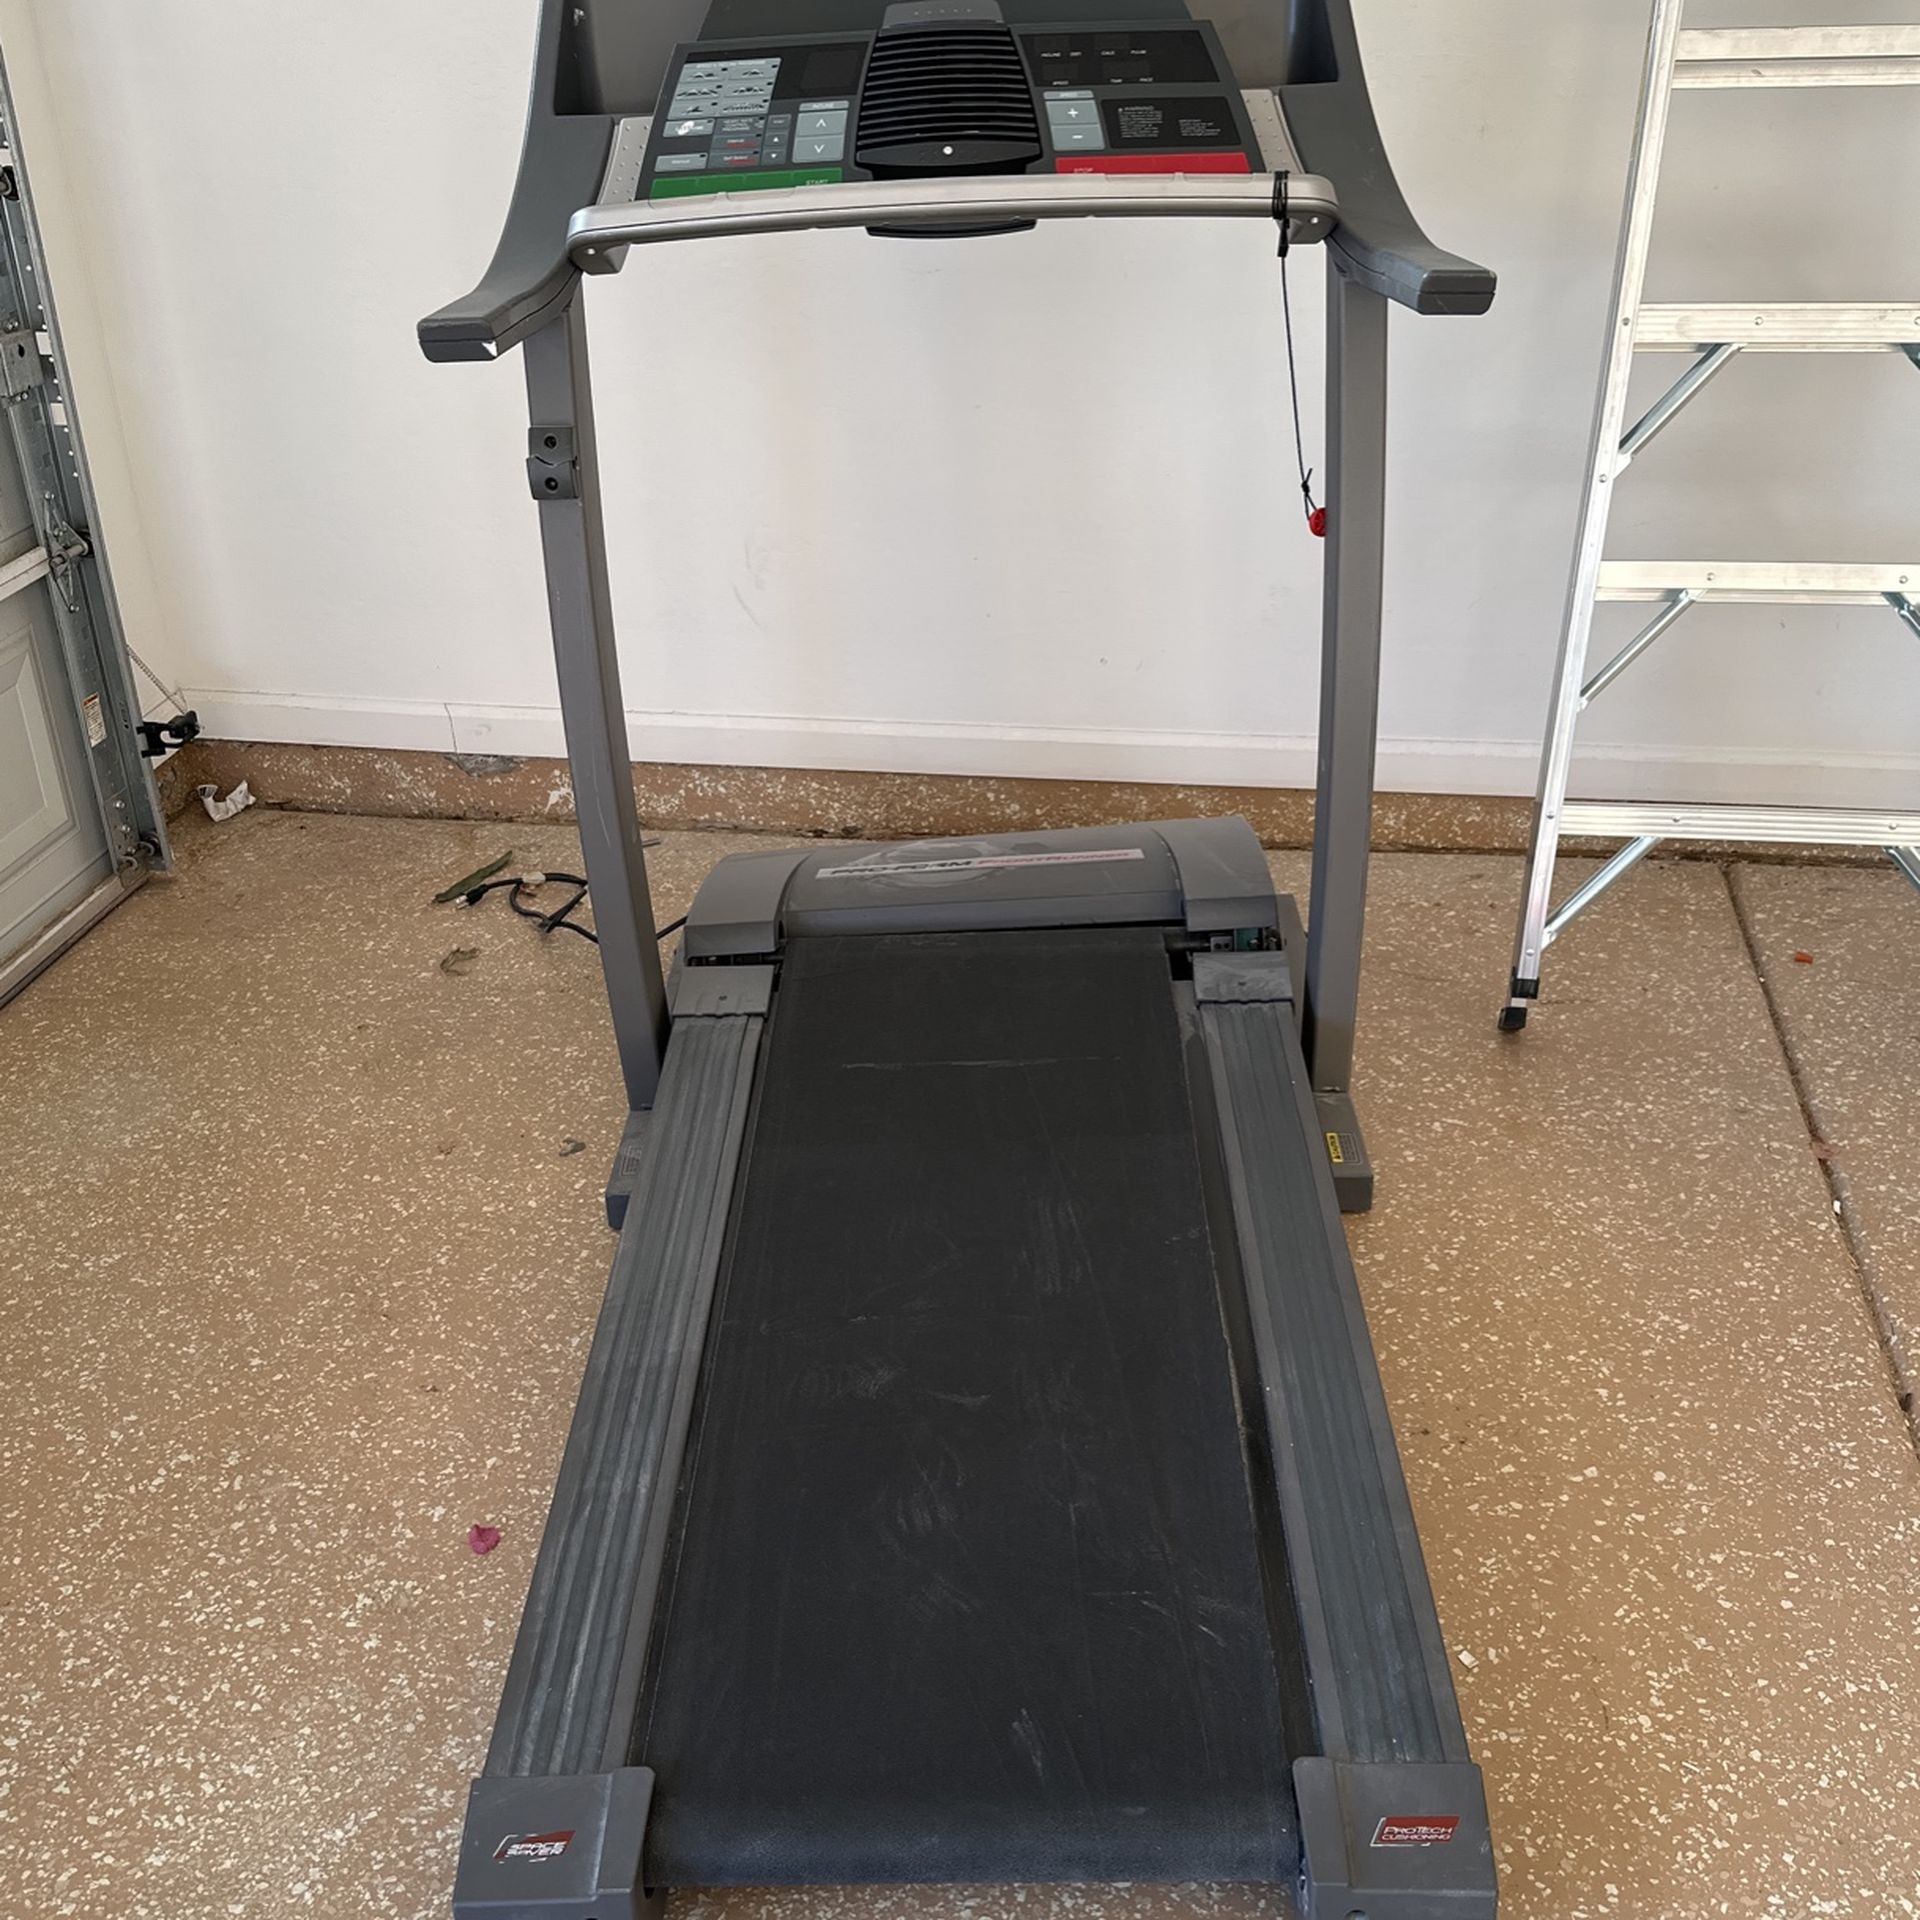 Pro-form front runner treadmill